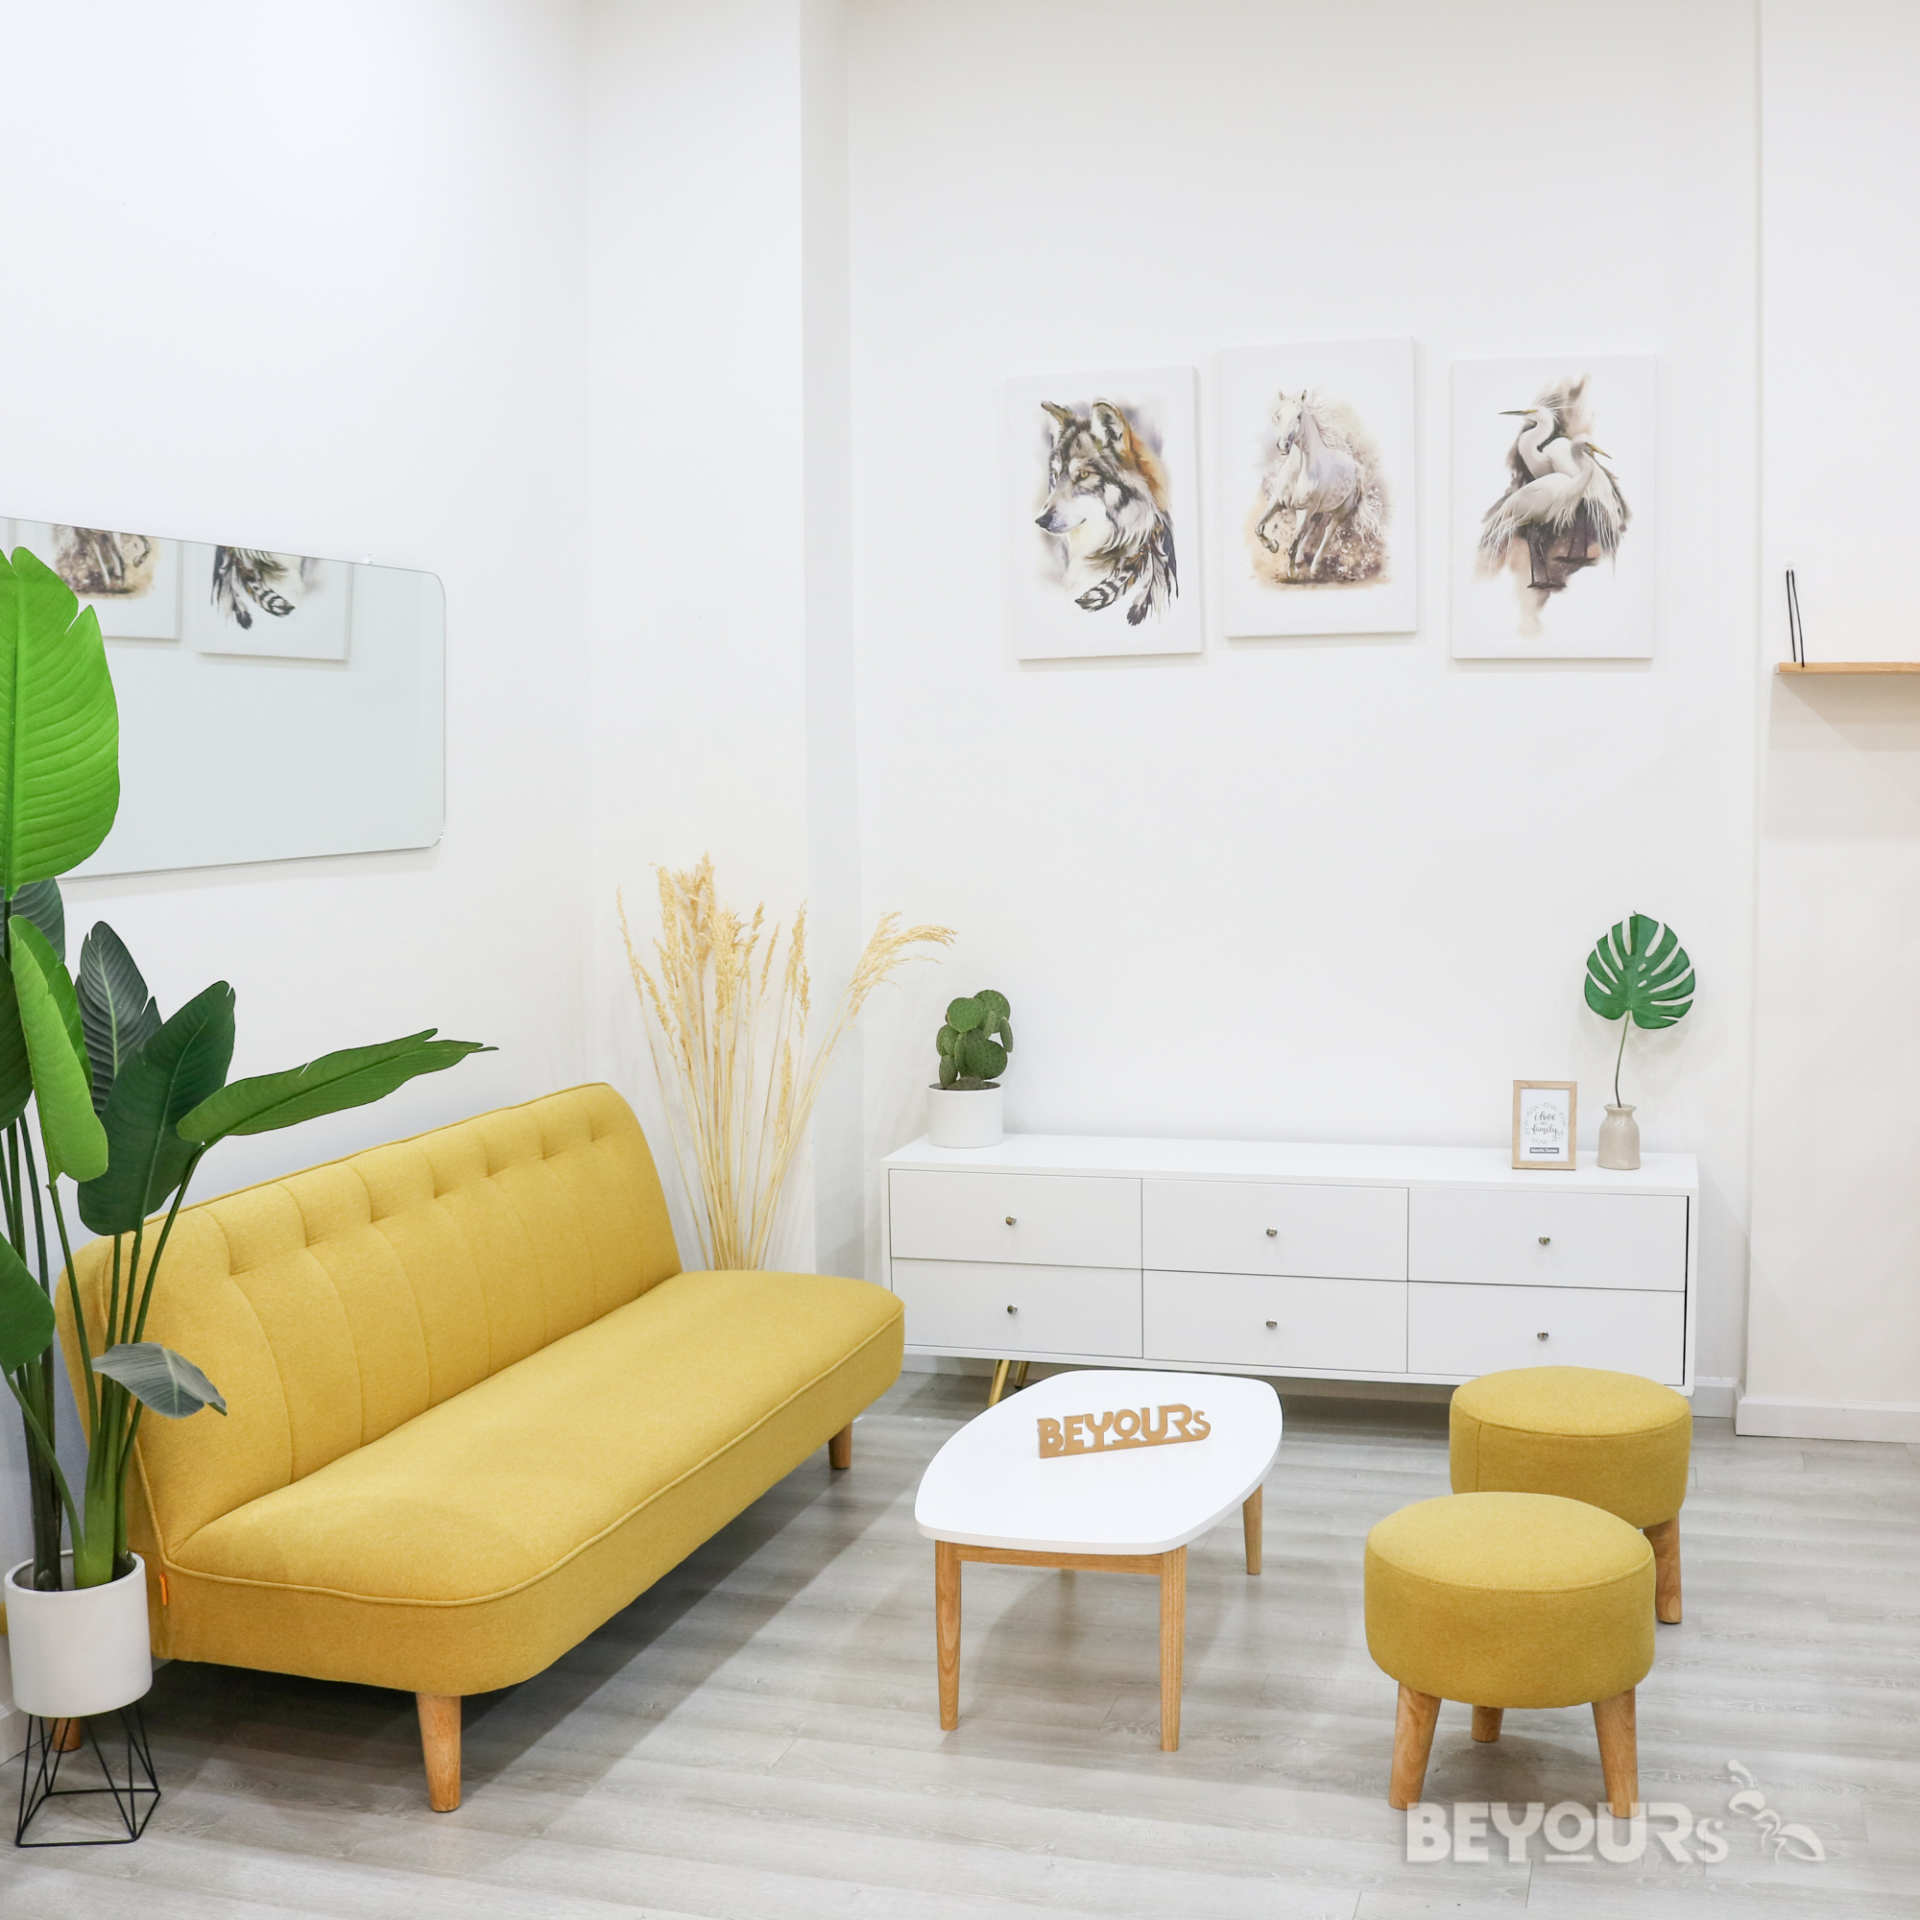 Với diện tích phòng khách nhỏ, hãy tạo ra một thiết kế nội thất tối giản nhưng không kém phần sang trọng. Cùng khám phá những mẫu thiết kế nội thất tối giản phòng khách nhỏ đáng yêu, tinh tế và tiện nghi để tạo ra một không gian sống đẹp và hiện đại cho gia đình mình.